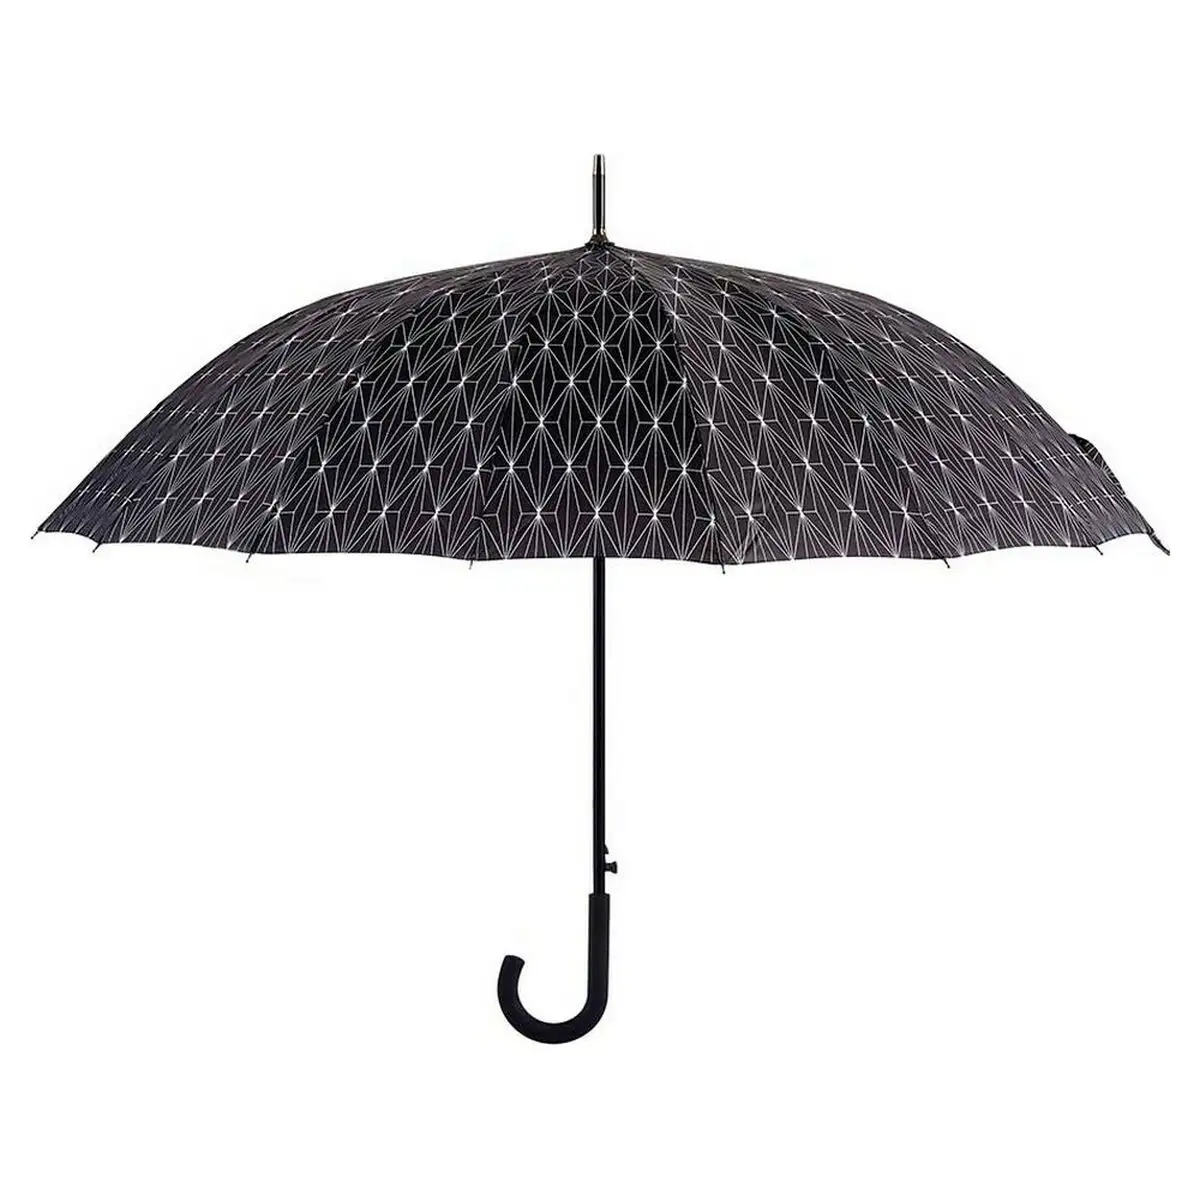 Parapluie imprime rouge gris bleu metal 106 x 106 x 93 cm _2447. DIAYTAR SENEGAL - Votre Escapade Shopping Virtuelle. Explorez notre boutique en ligne et dénichez des trésors qui évoquent la culture et le savoir-faire sénégalais, un clic à la fois.